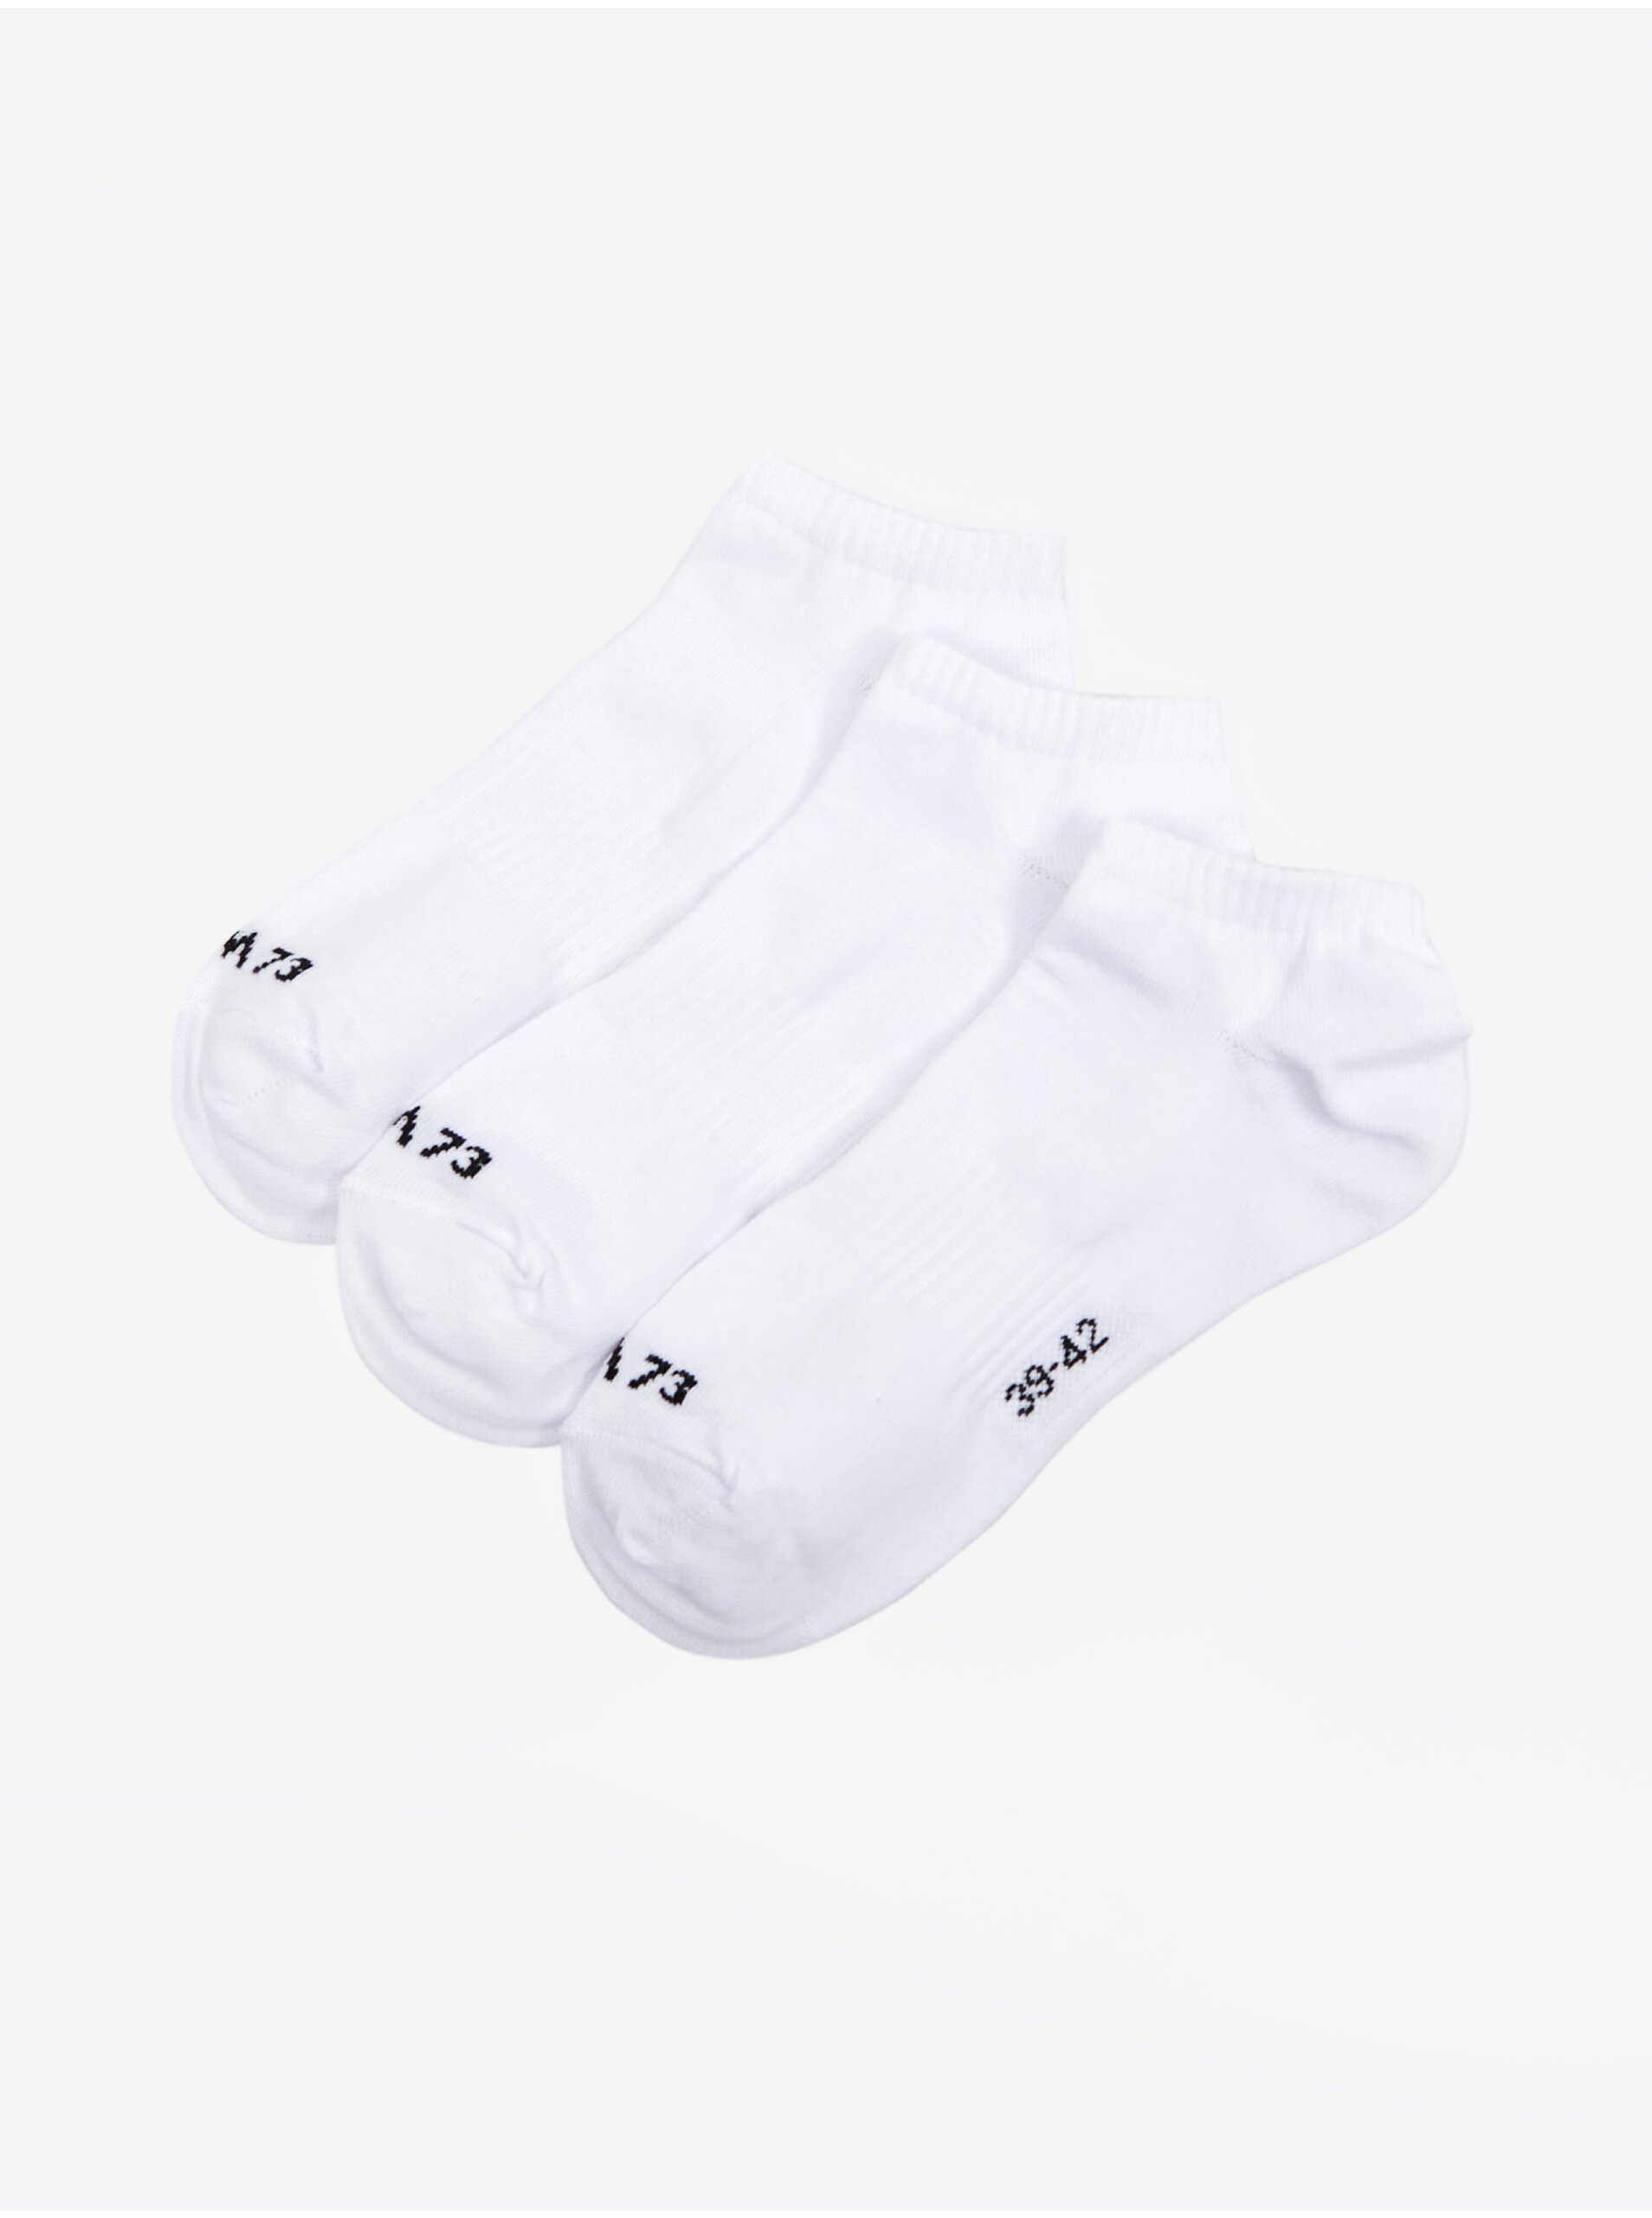 Lacno Súprava troch párov pánskych ponožiek v bielej farbe SAM 73 Invercargill